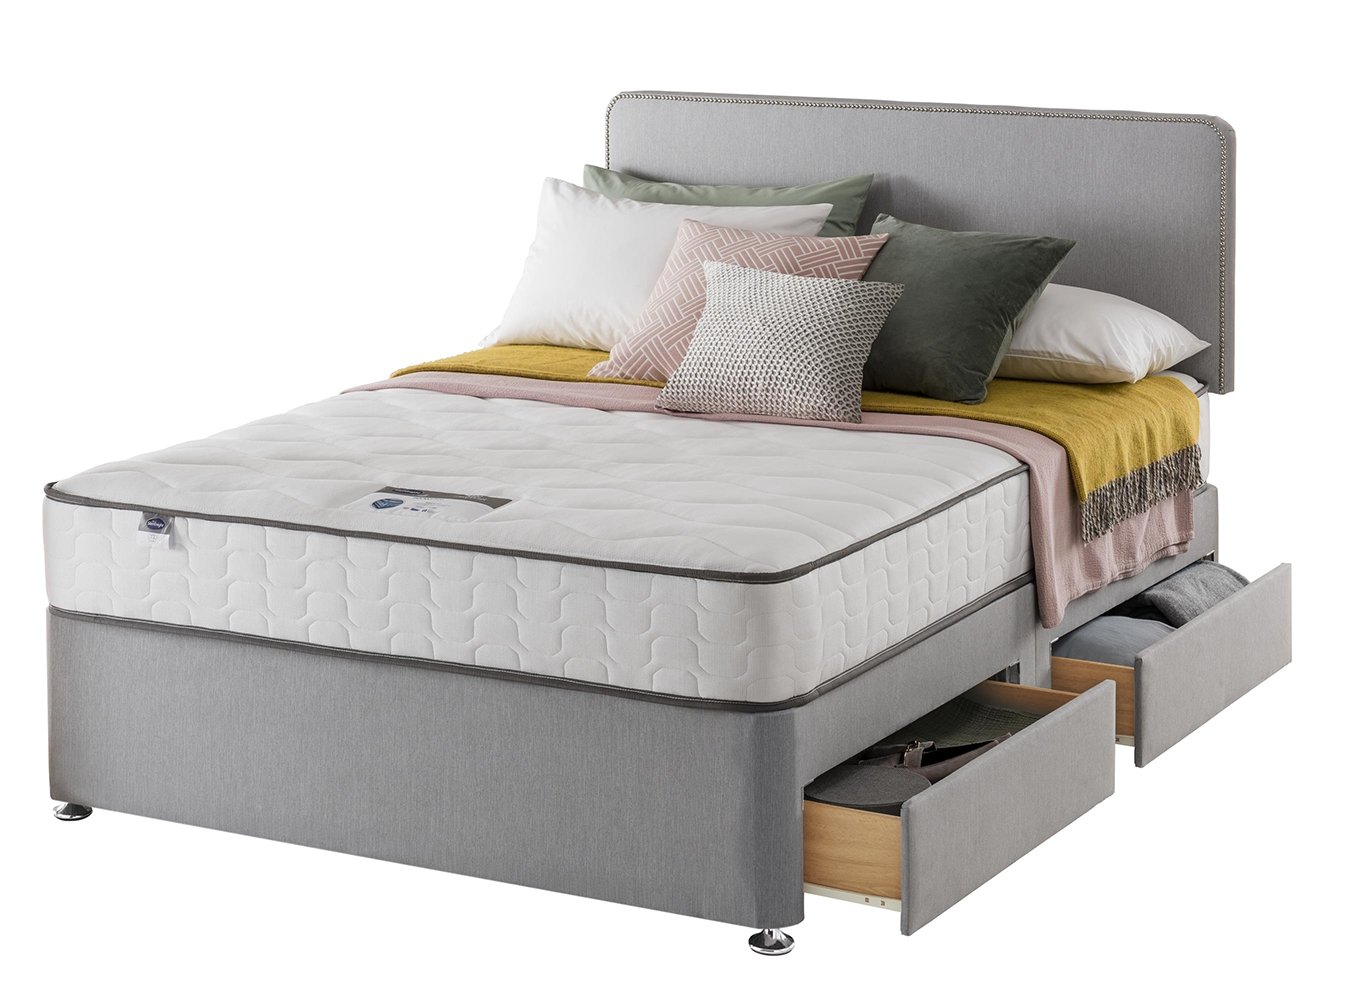 Silentnight Pavia Kingsize Comfort 4 Drawer Divan Bed - Grey